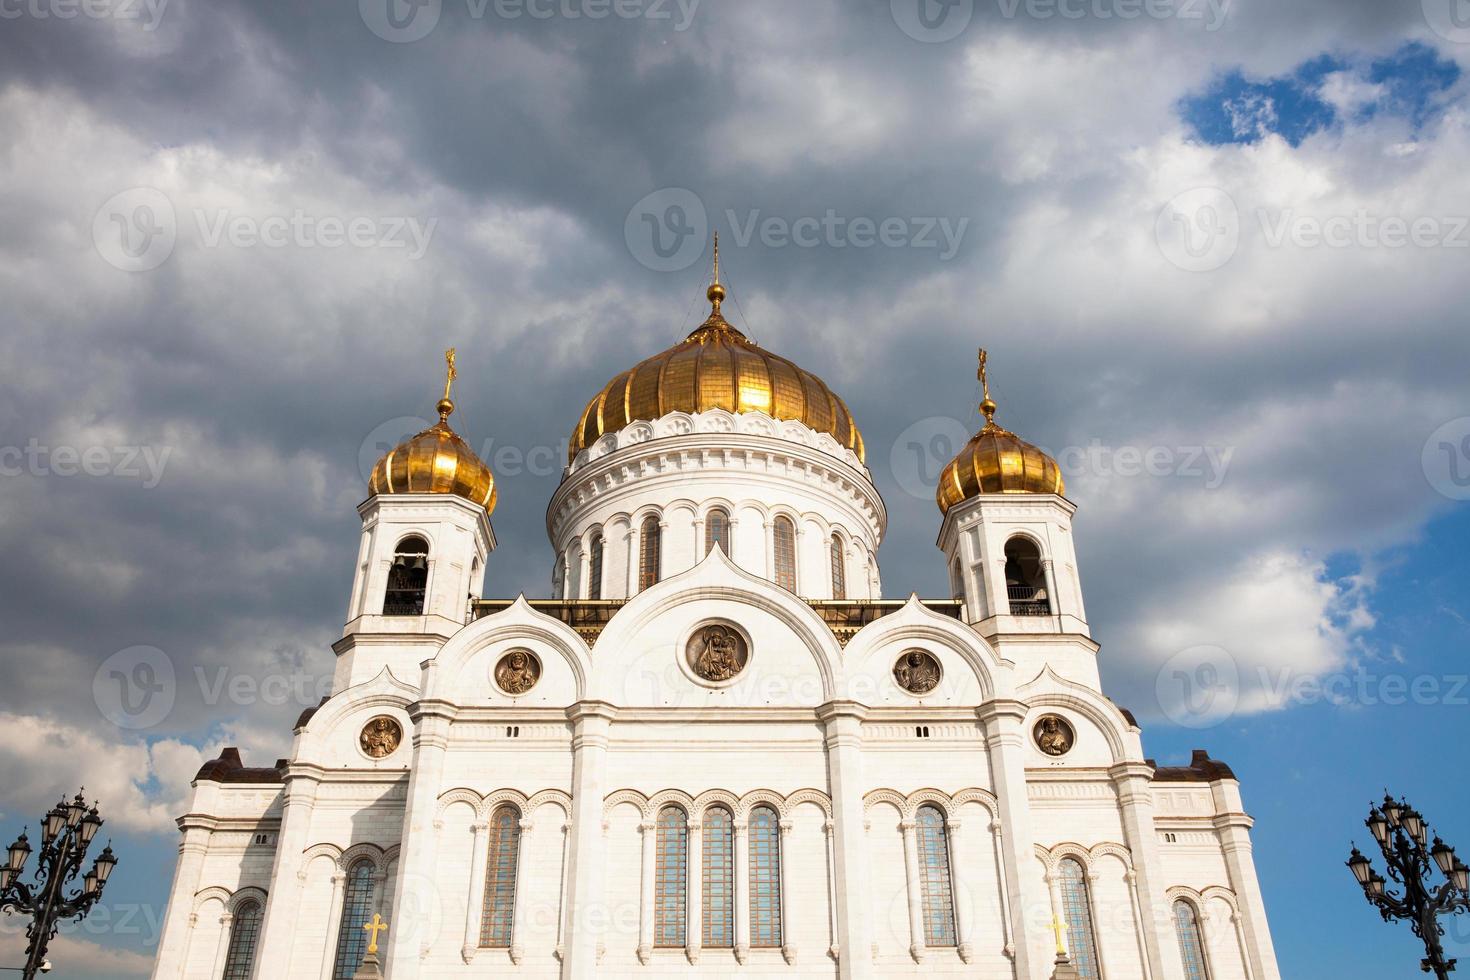 Kathedrale von Christus dem Retter in Moskau foto